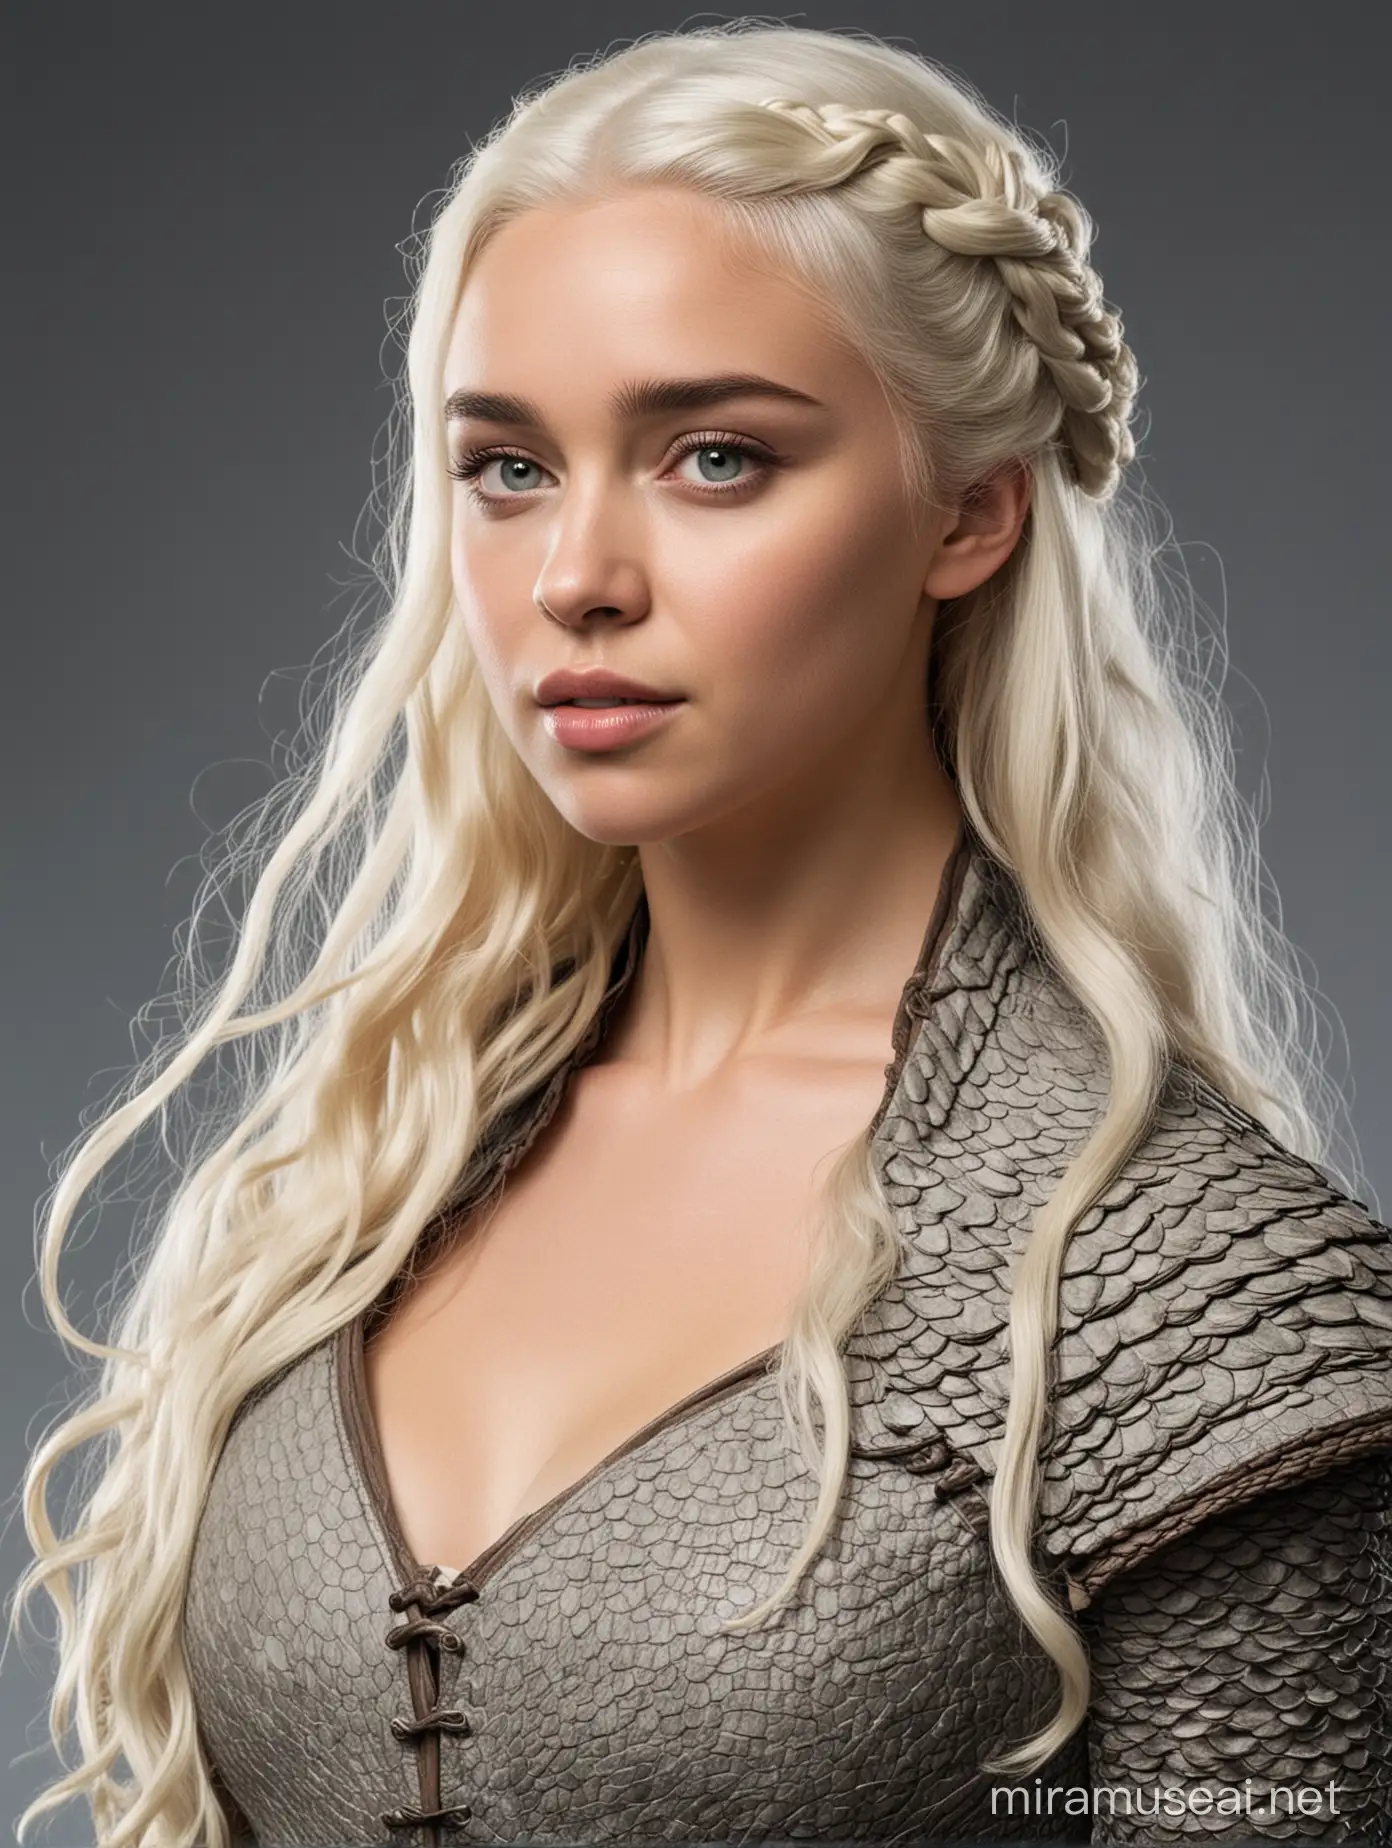 Daenerys Targaryen, modelshoot

